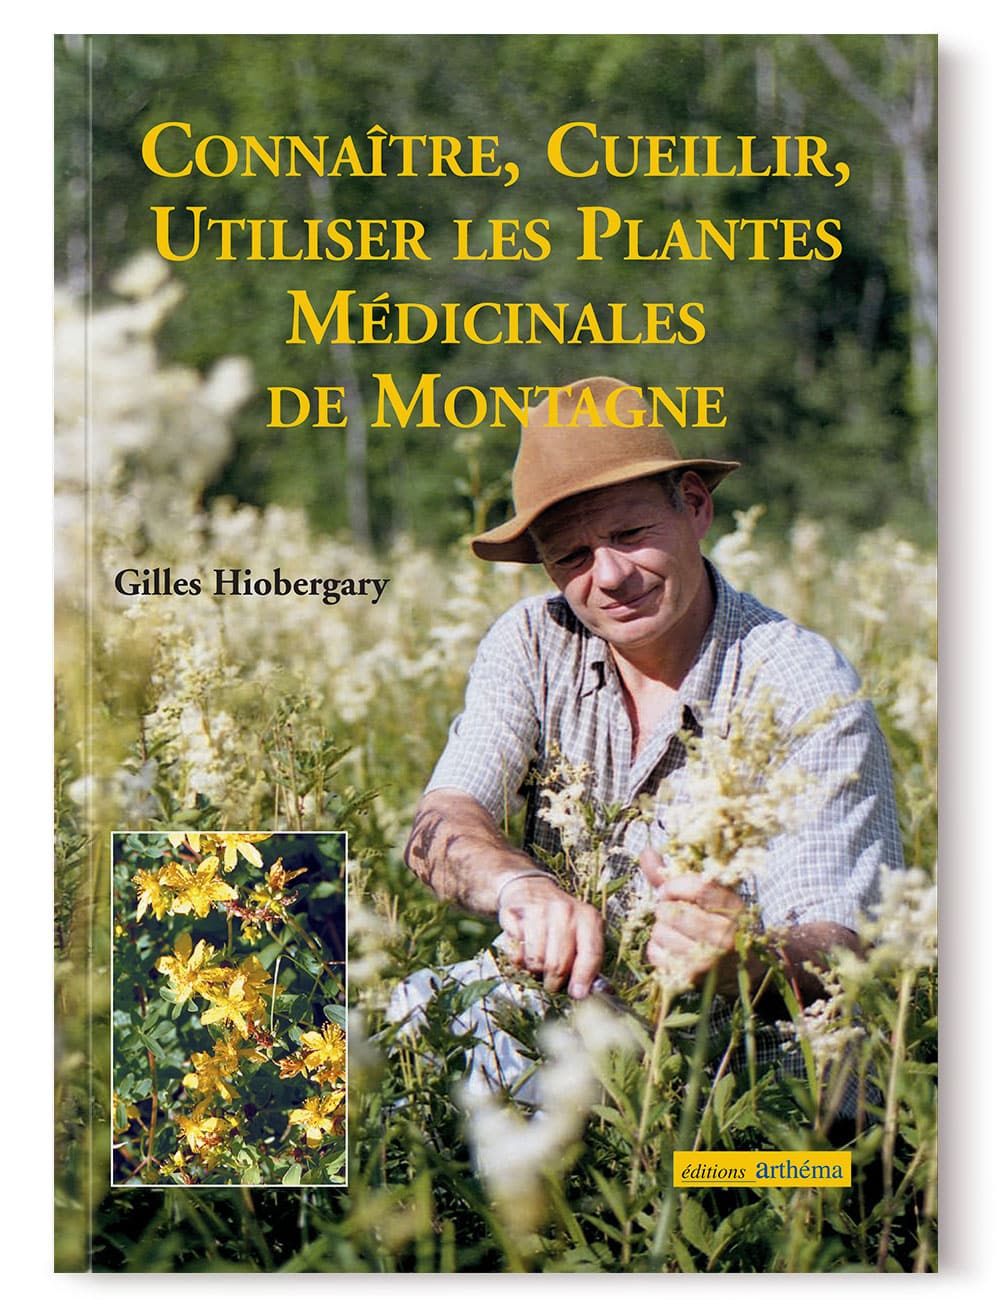 Livres sur les plantes médicinales, une sélection - Cueilleurs